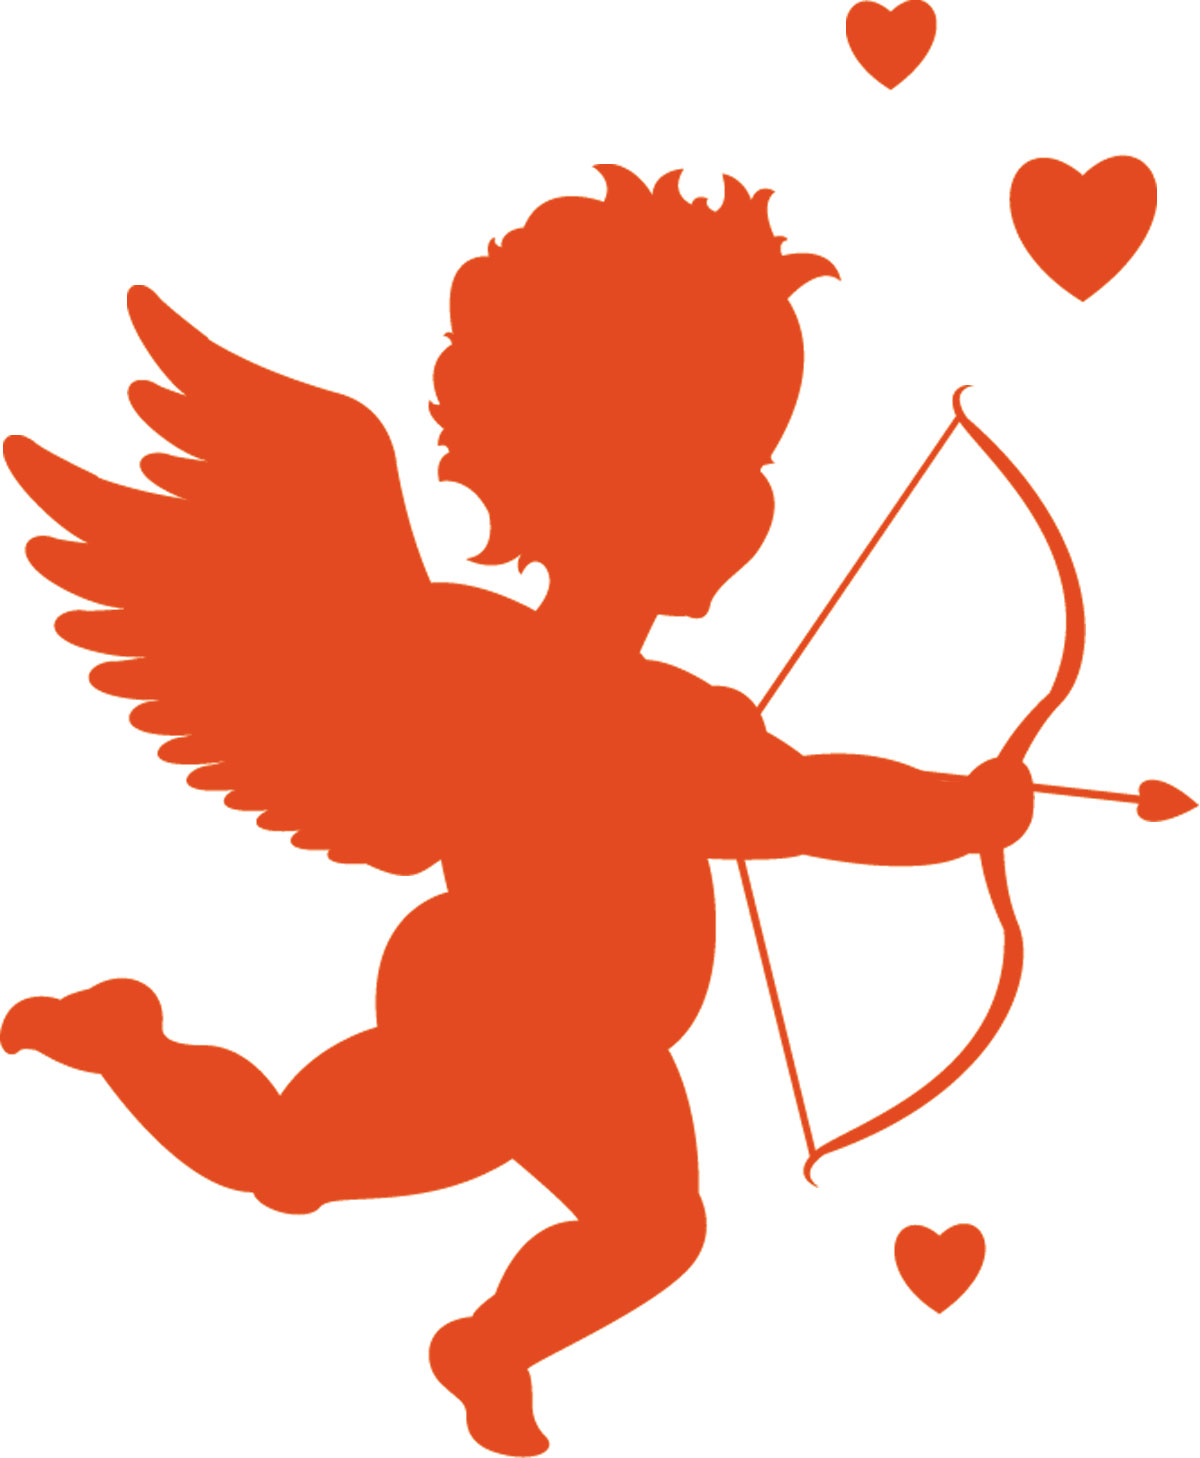 Mr. Fab goes Cupid